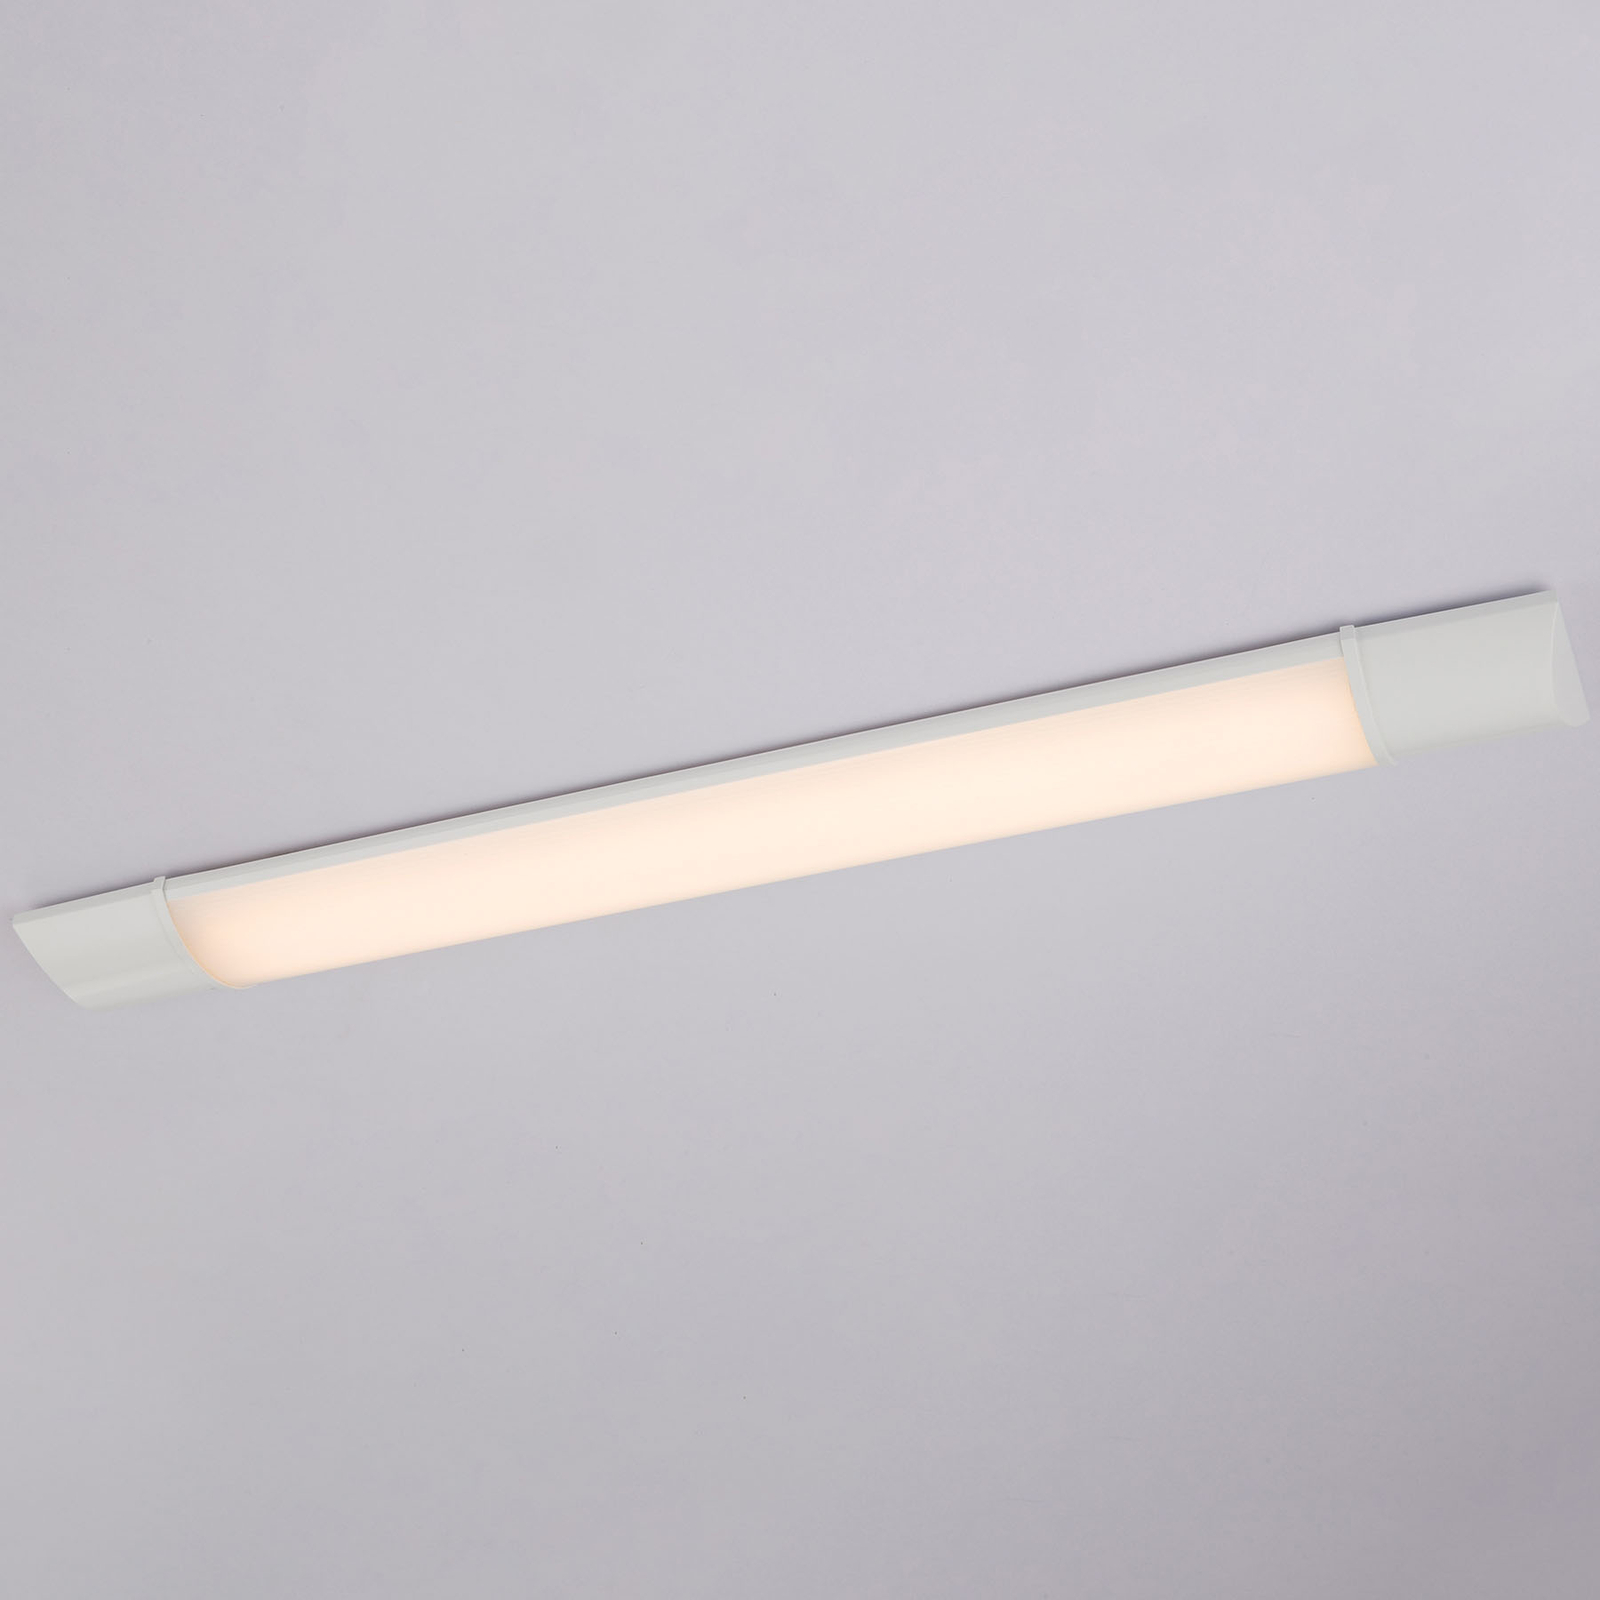 Oprawa podszafkowa LED Obara, IP20, 60 cm długości